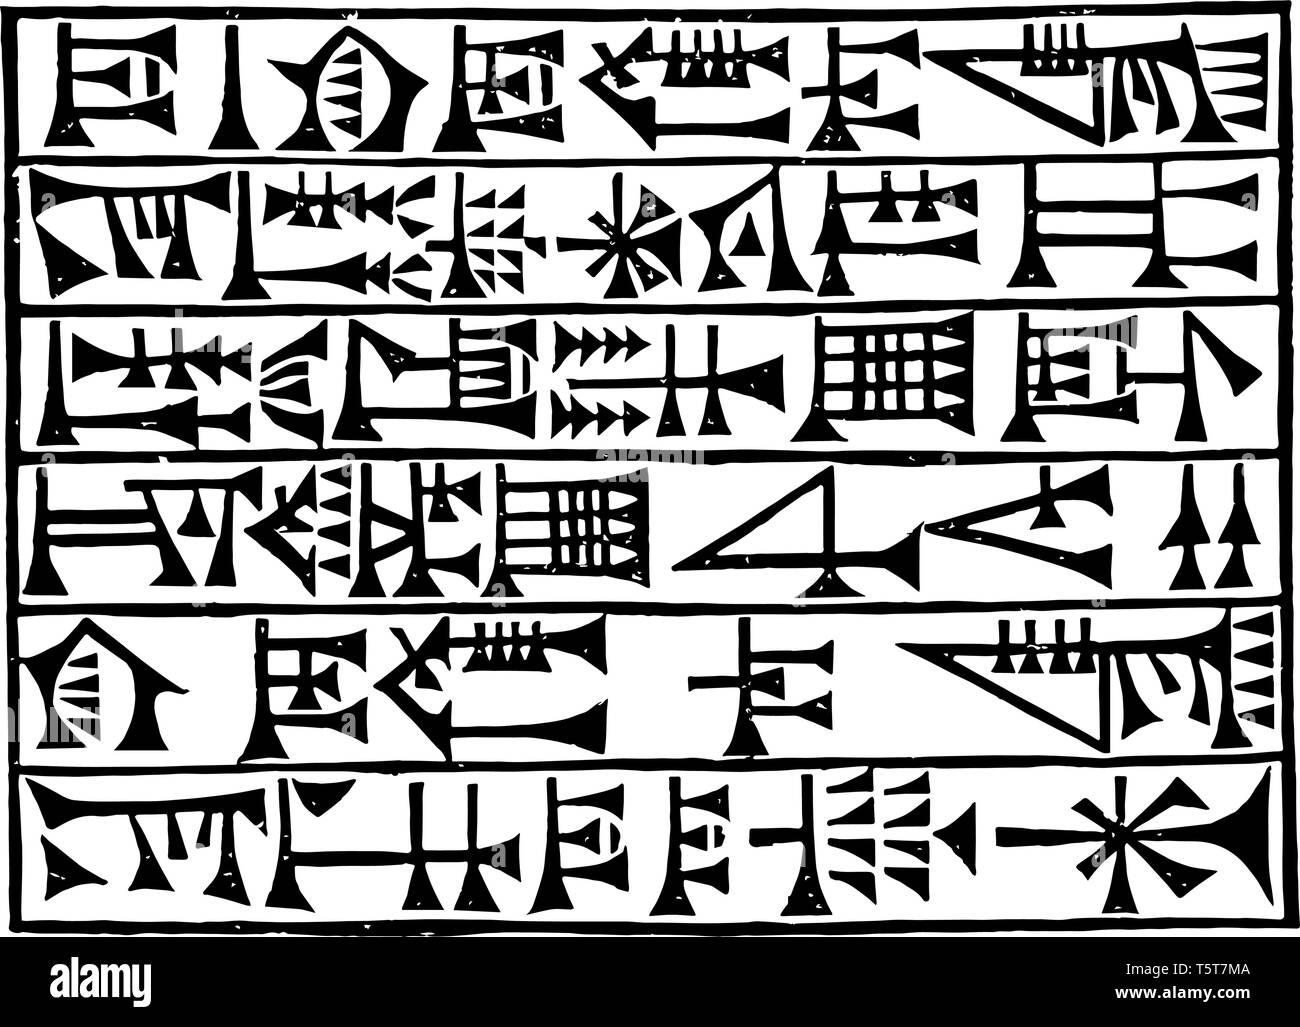 Das Bild zeigt die babylonischen Script. Es ist eine der Sprachen in einer Zeile geschrieben. Sumerische Keilschrift schreiben System genannt, vintage Strichzeichnung oder engr Stock Vektor